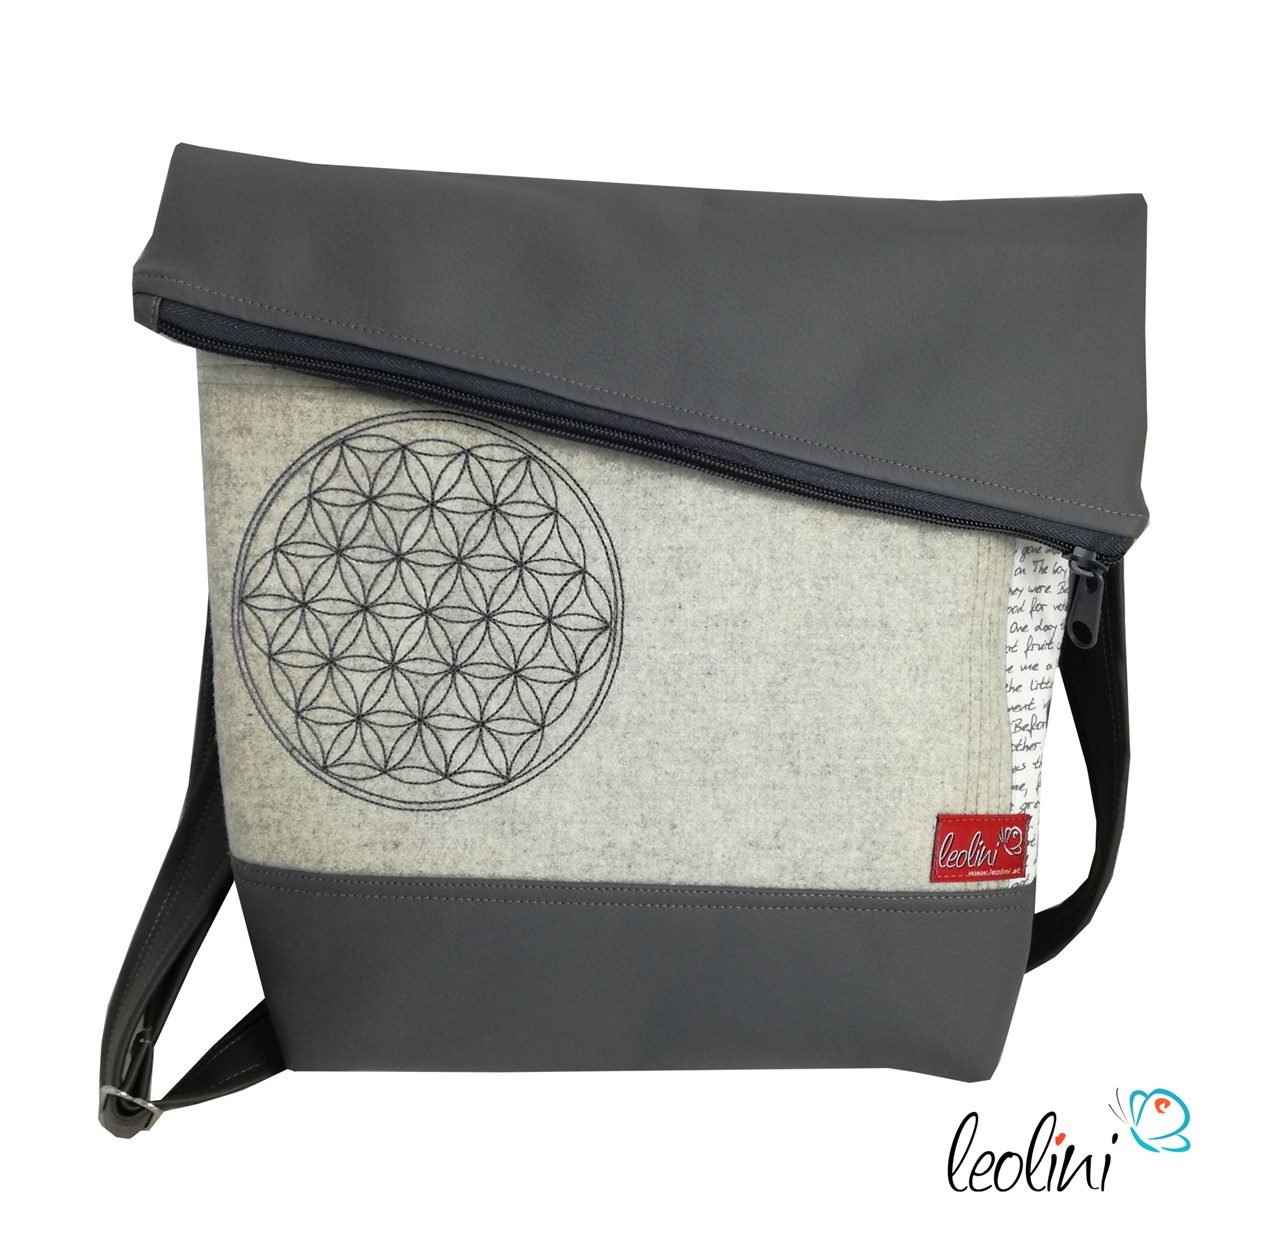 Leolini  Produkt-Beispiele Blume des Lebens Foldovertasche handmade